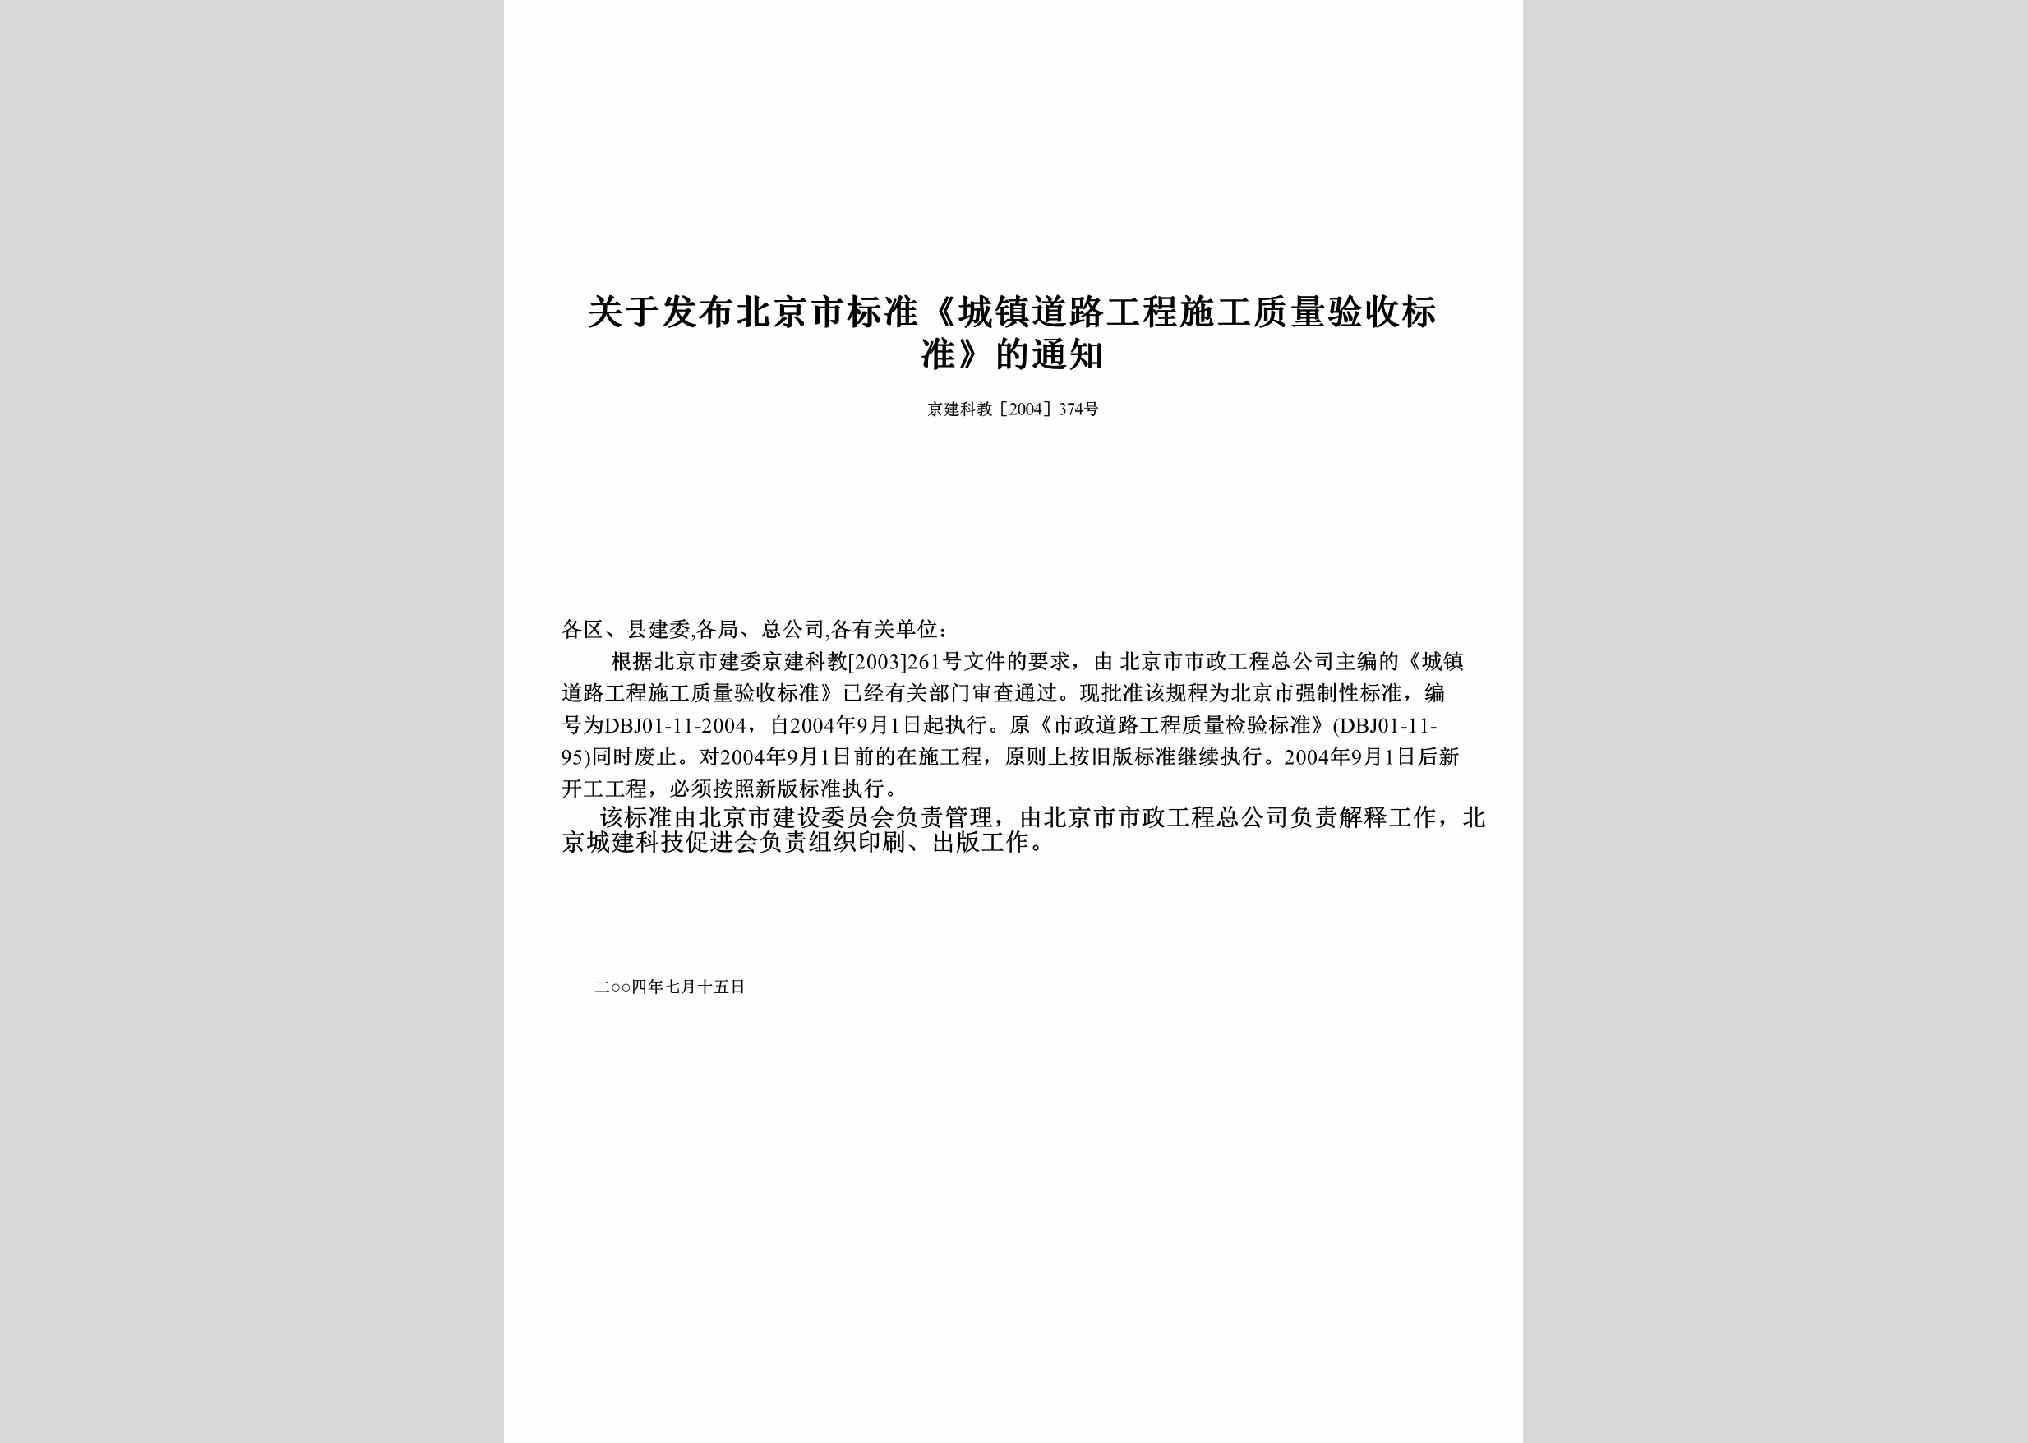 京建科教[2004]374号：关于发布北京市标准《城镇道路工程施工质量验收标准》的通知